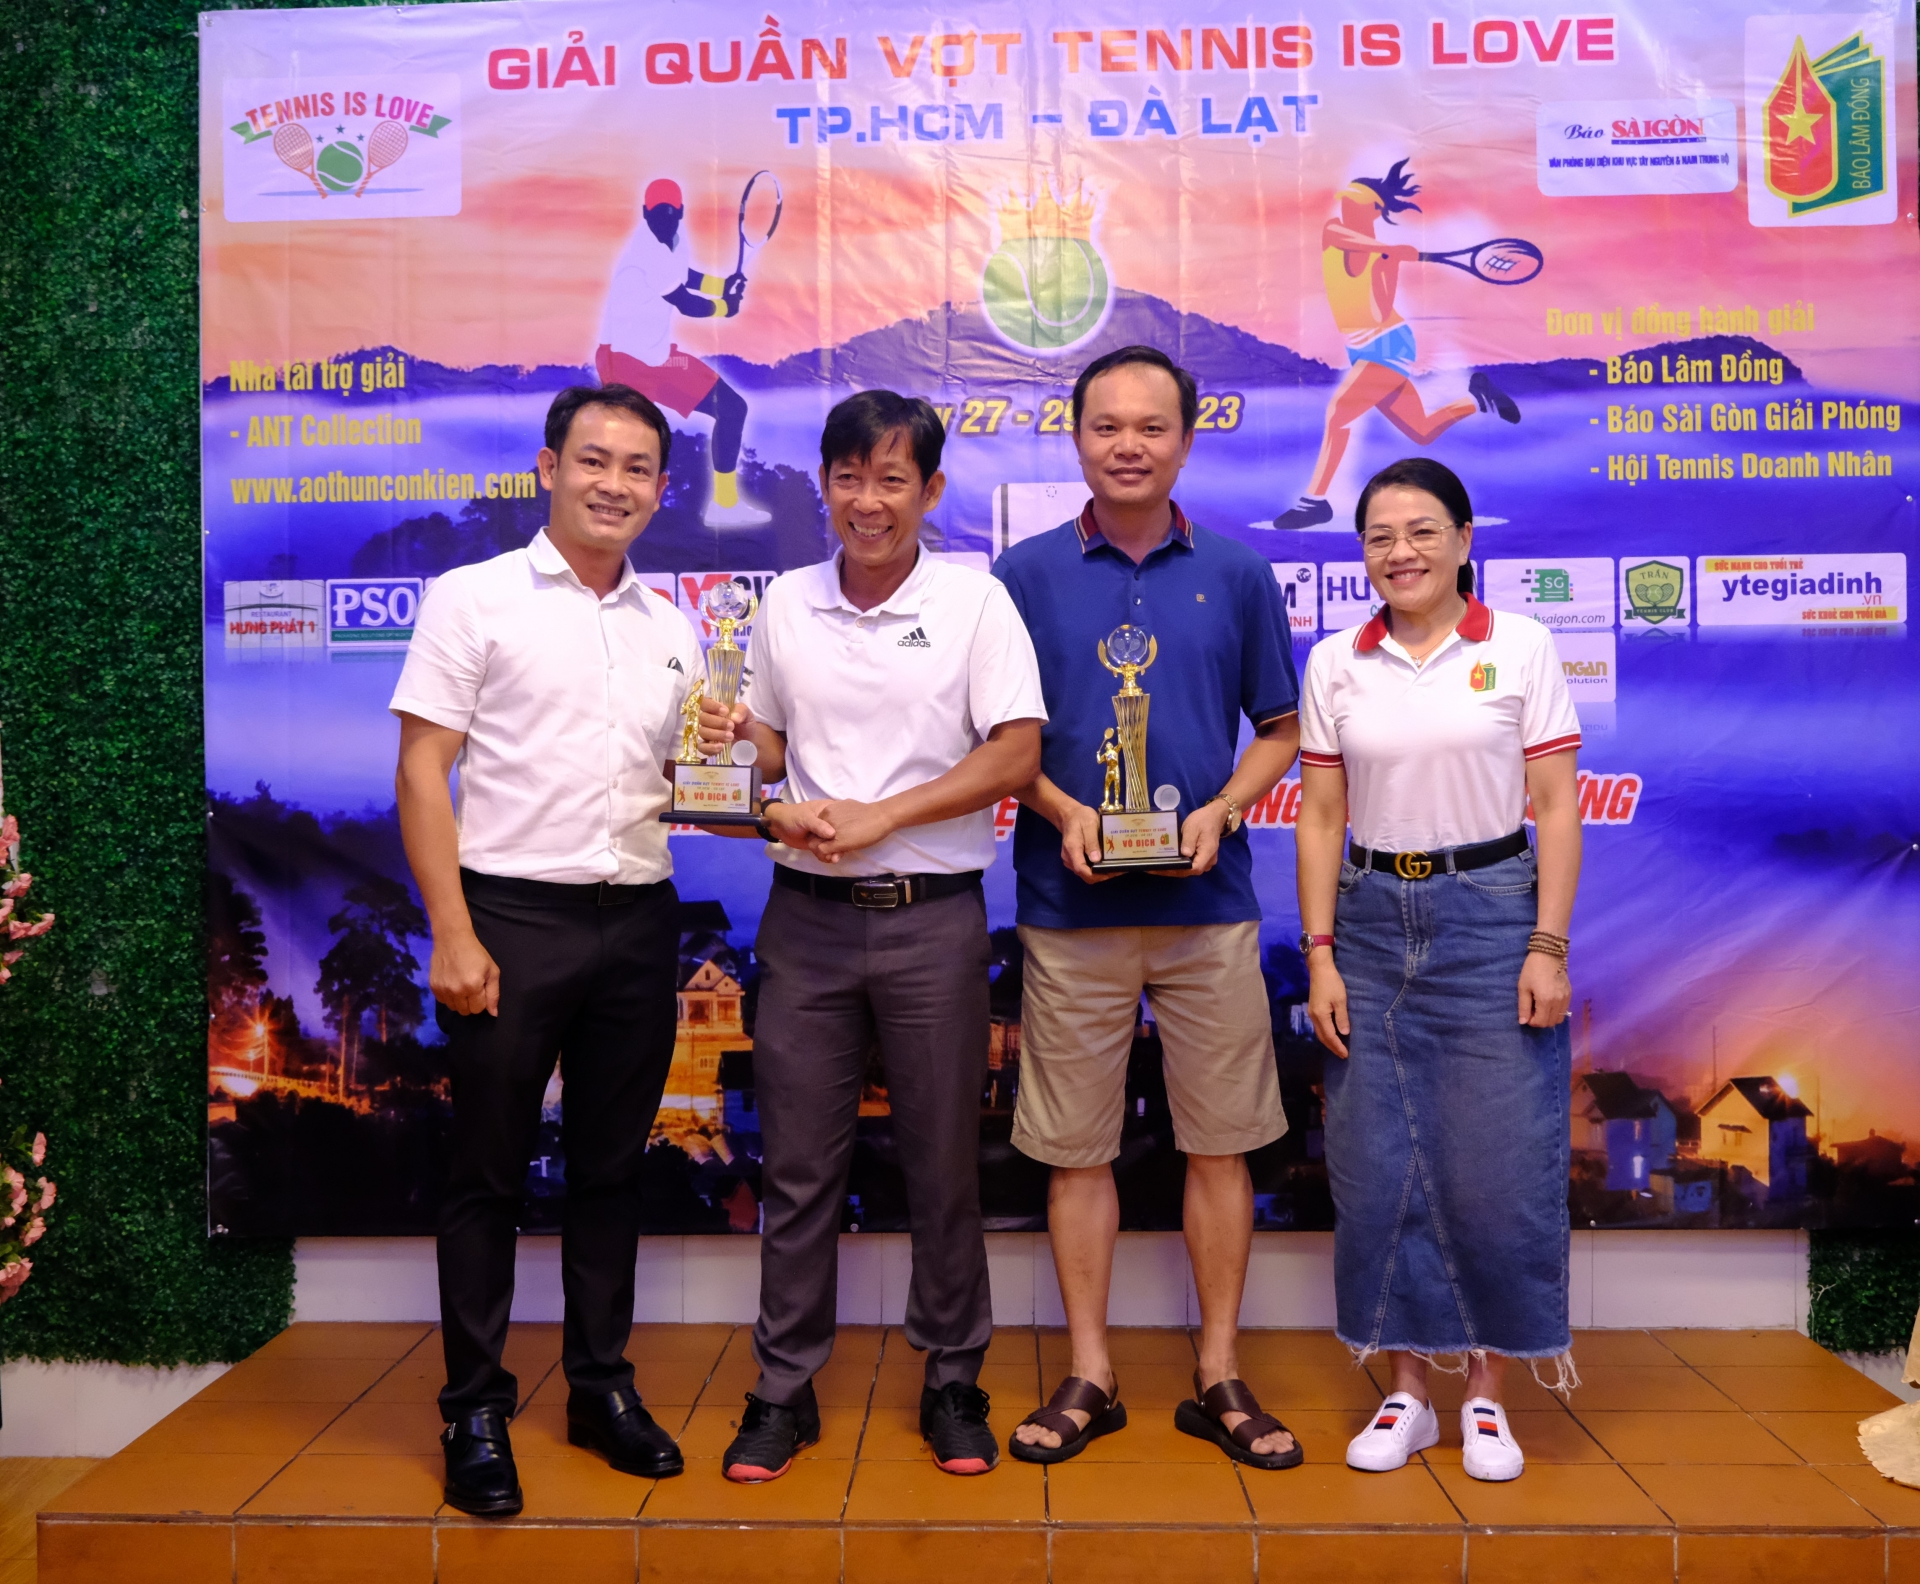 Lãnh đạo Báo Lâm Đồng và báo Sài Gòn Giải Phóng trao giải nhất cho đôi vận động viên Văn Tiến - Thanh Phong